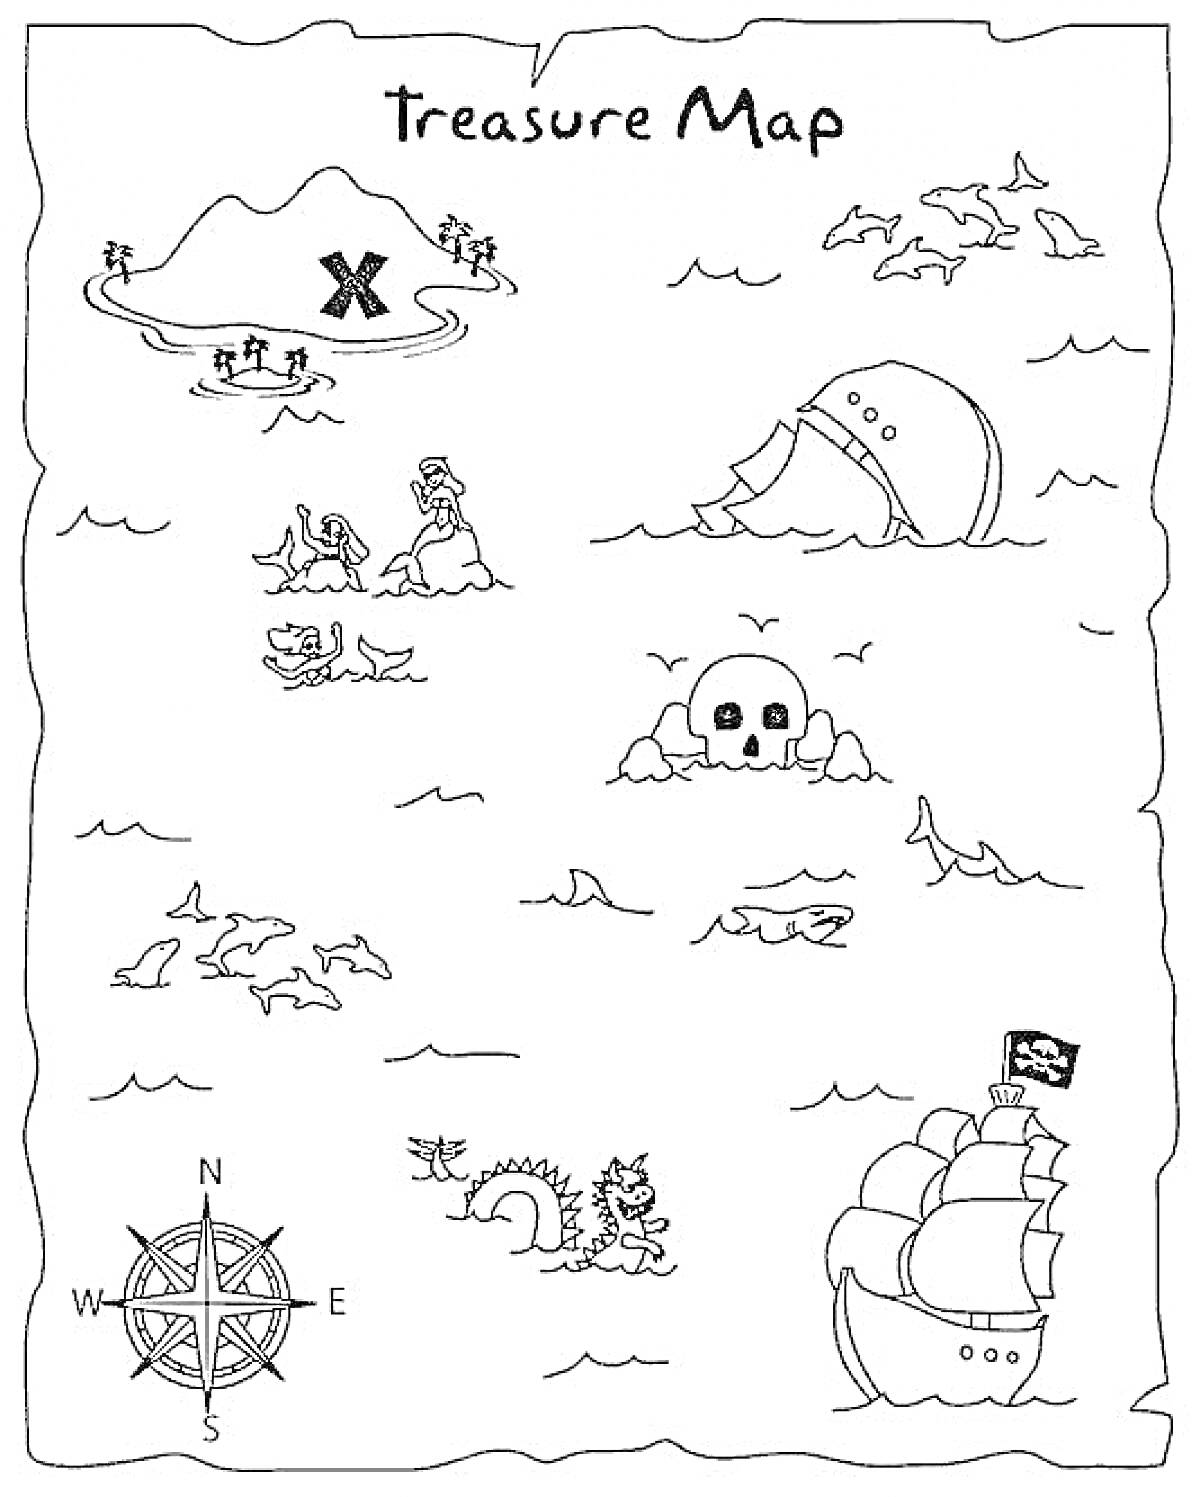 Раскраска Treasure Map с пиратским кораблем, островом с отметкой X, черепом, затонувшим кораблем, русалкой, морским змеем, компасом и чайками